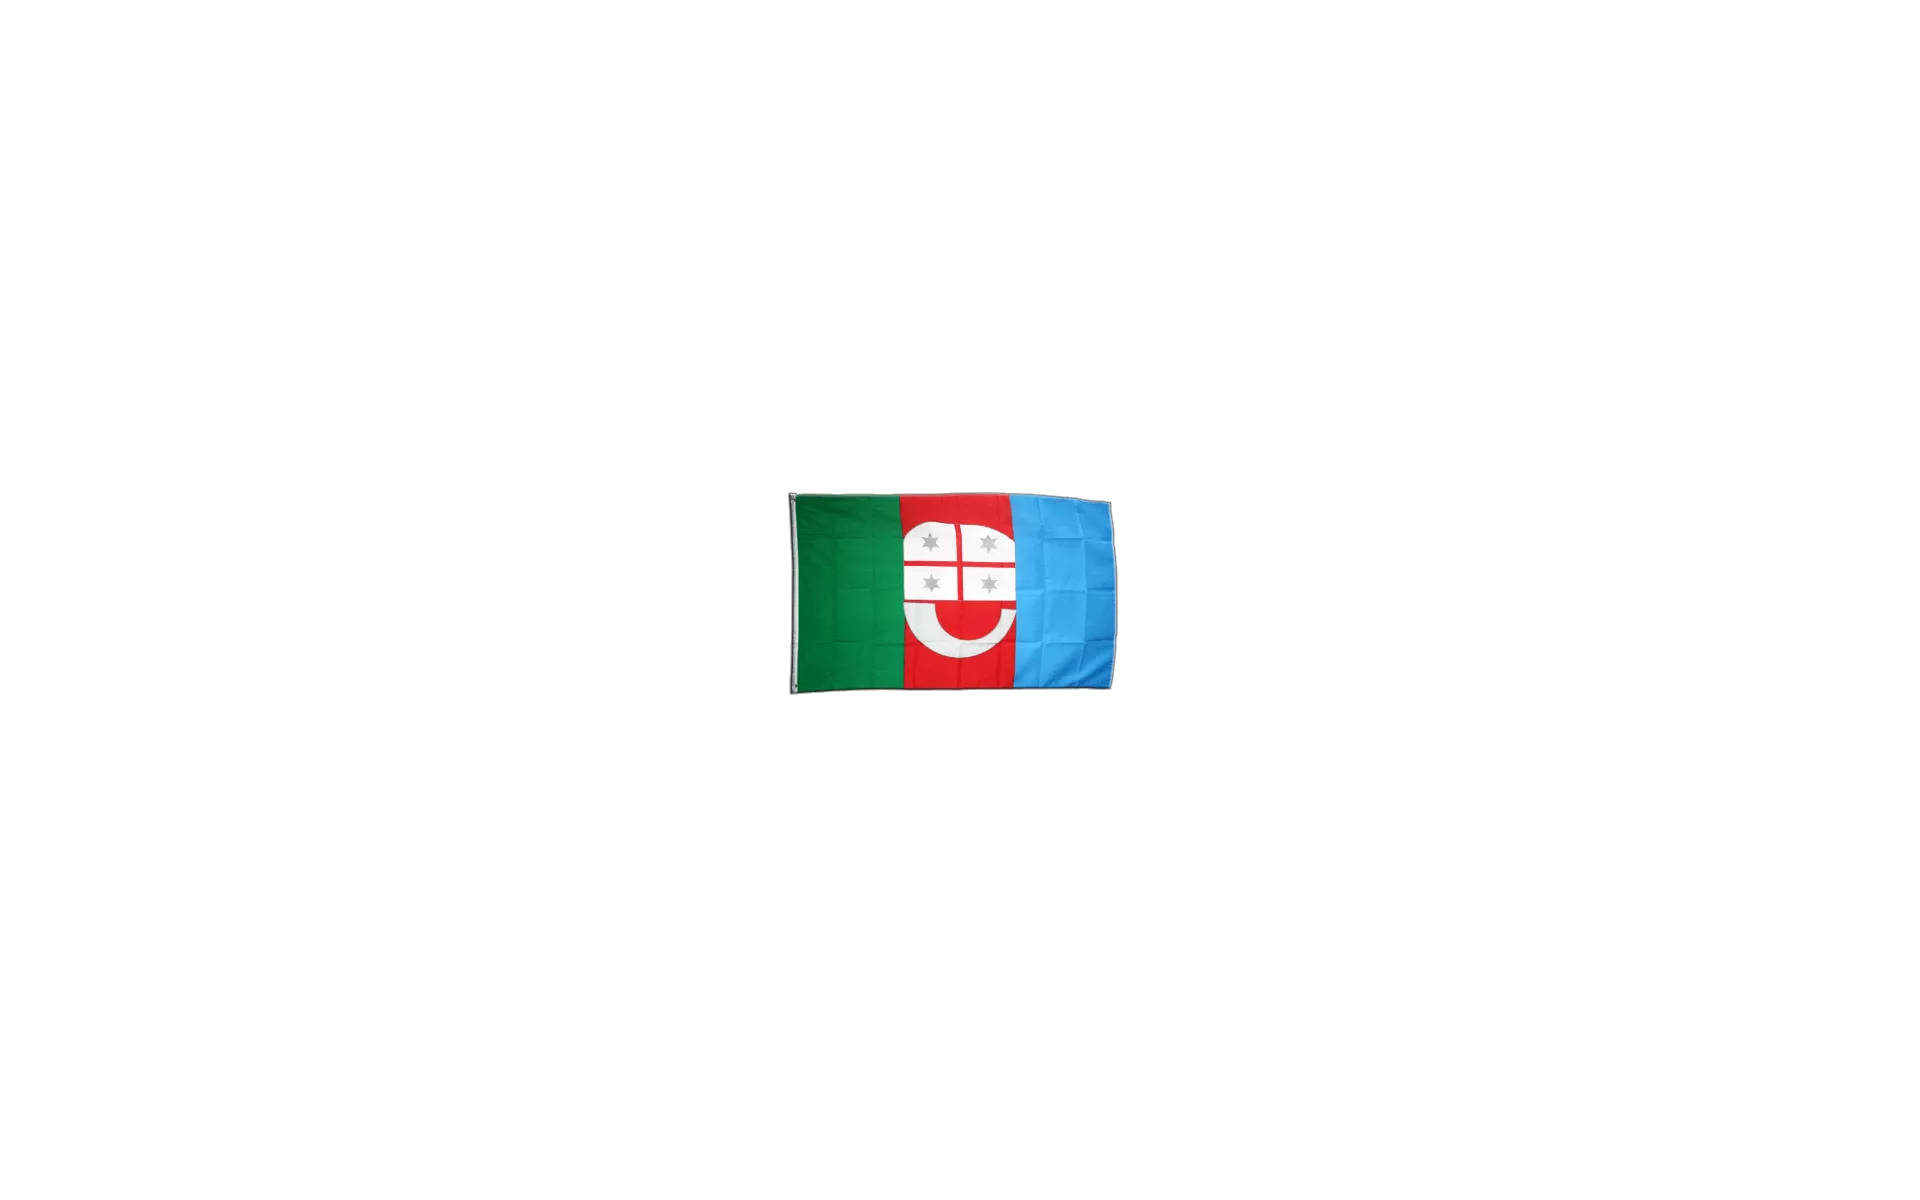 Flagge  Fahne Italien Ligurien günstig kaufen - flaggenfritze.de